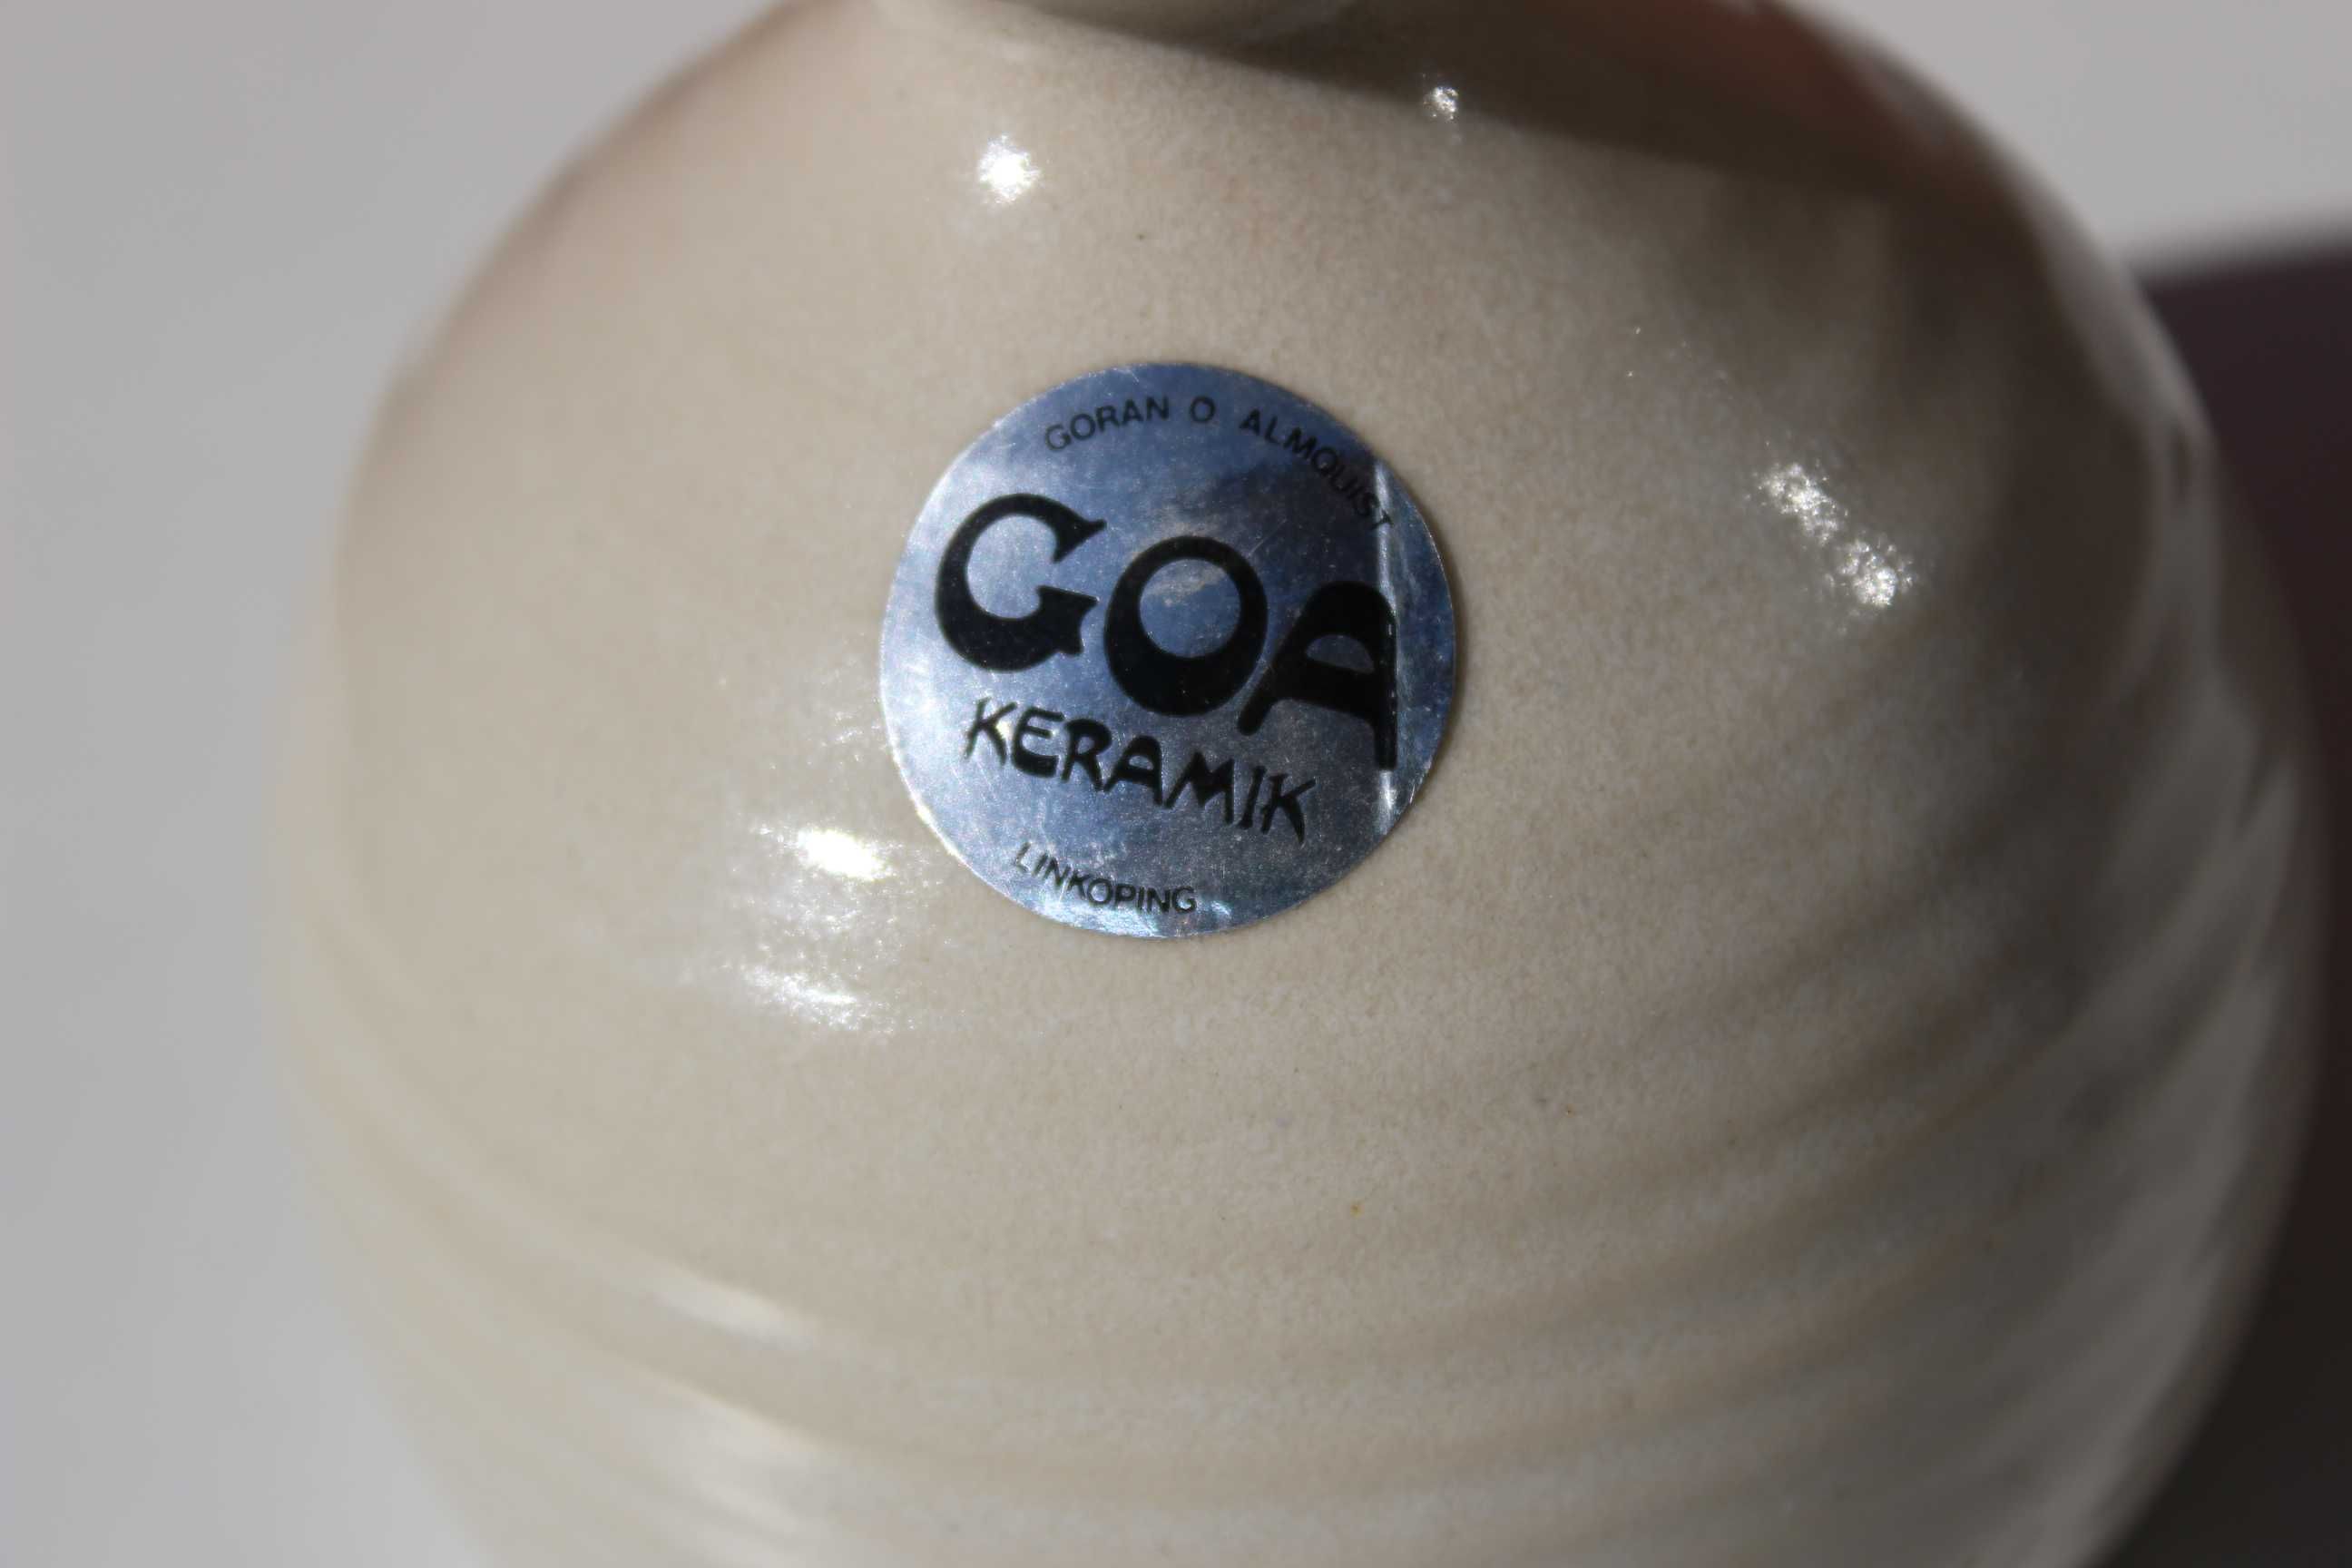 Lampa ulei ceramica, de colectie, GOA Keramik, SUEDIA